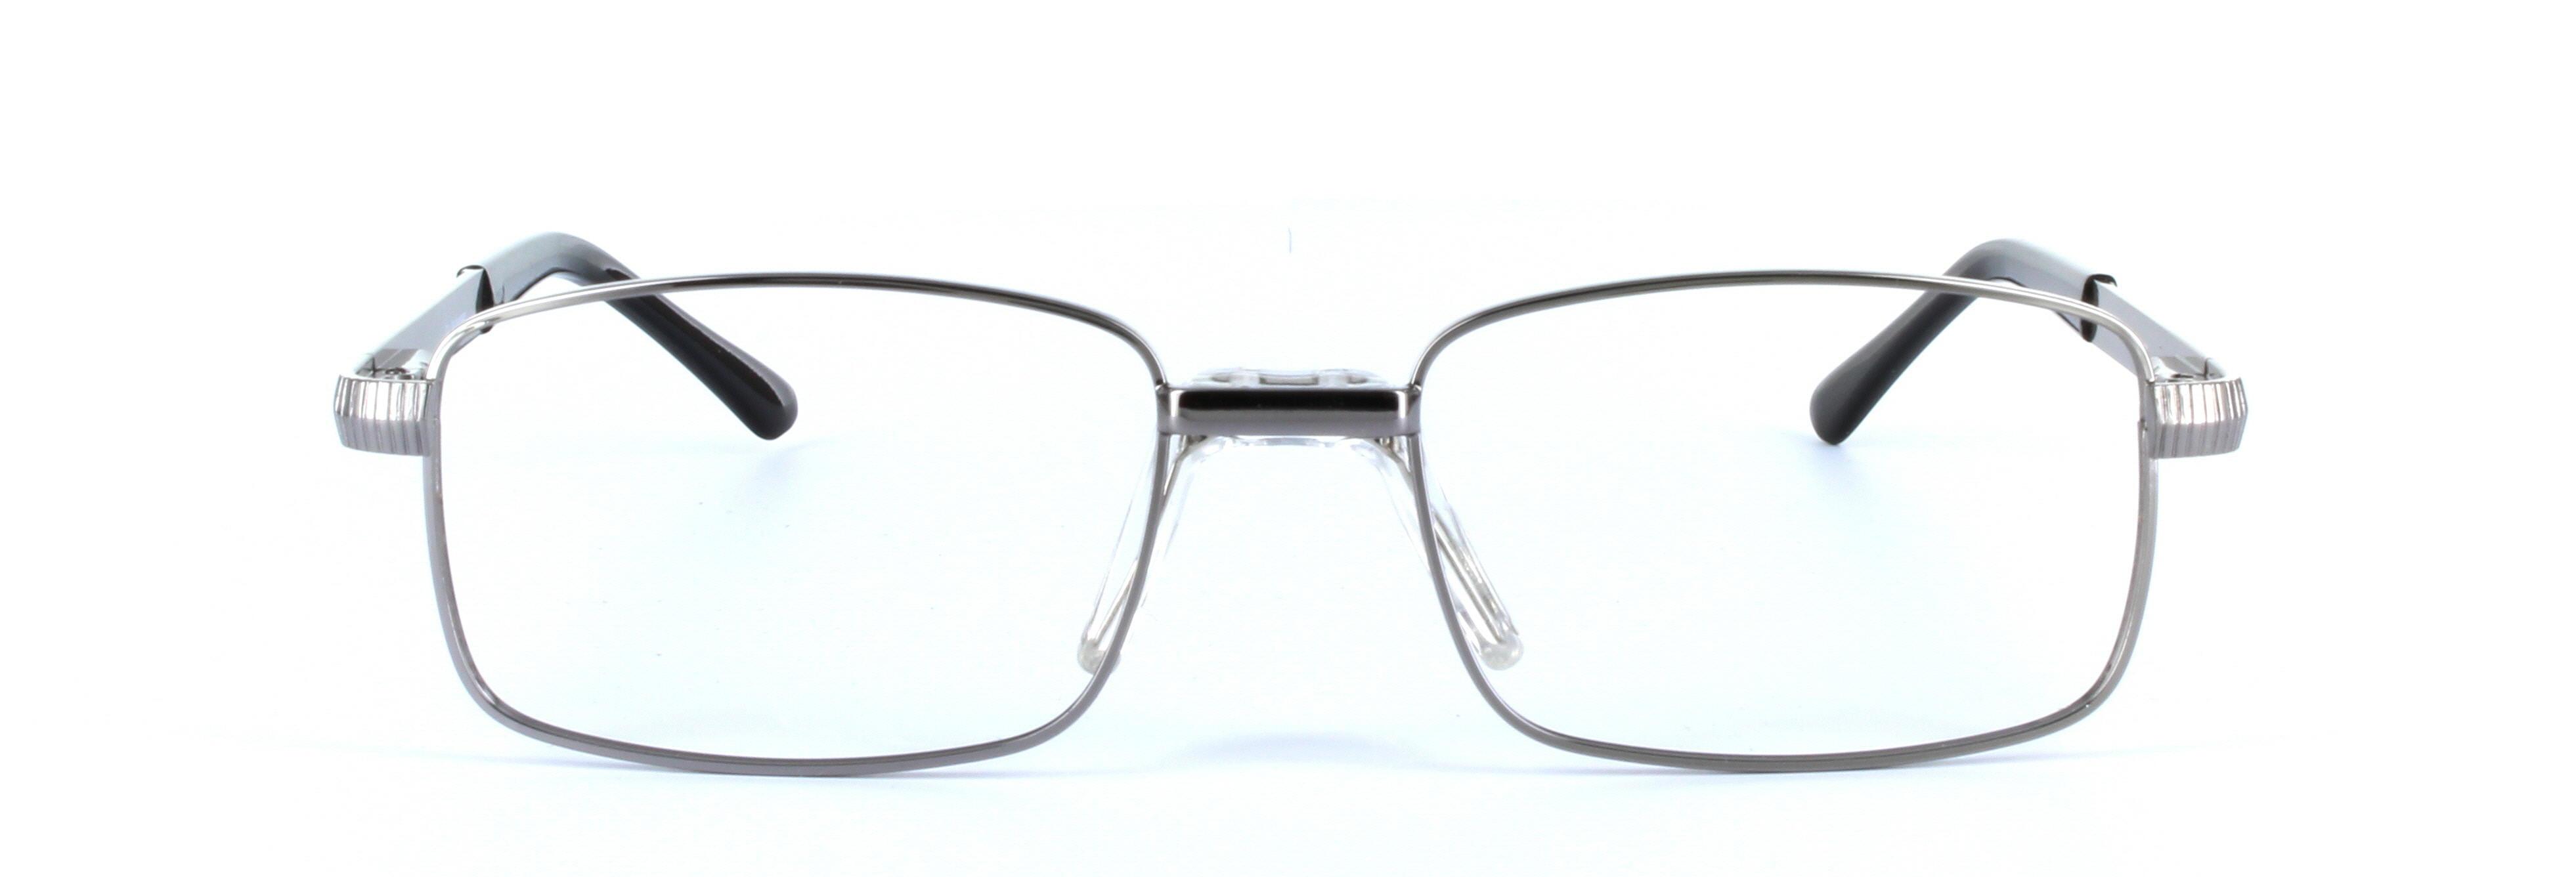 Jackson Gunmetal Full Rim Rectangular Metal Glasses - Image View 4